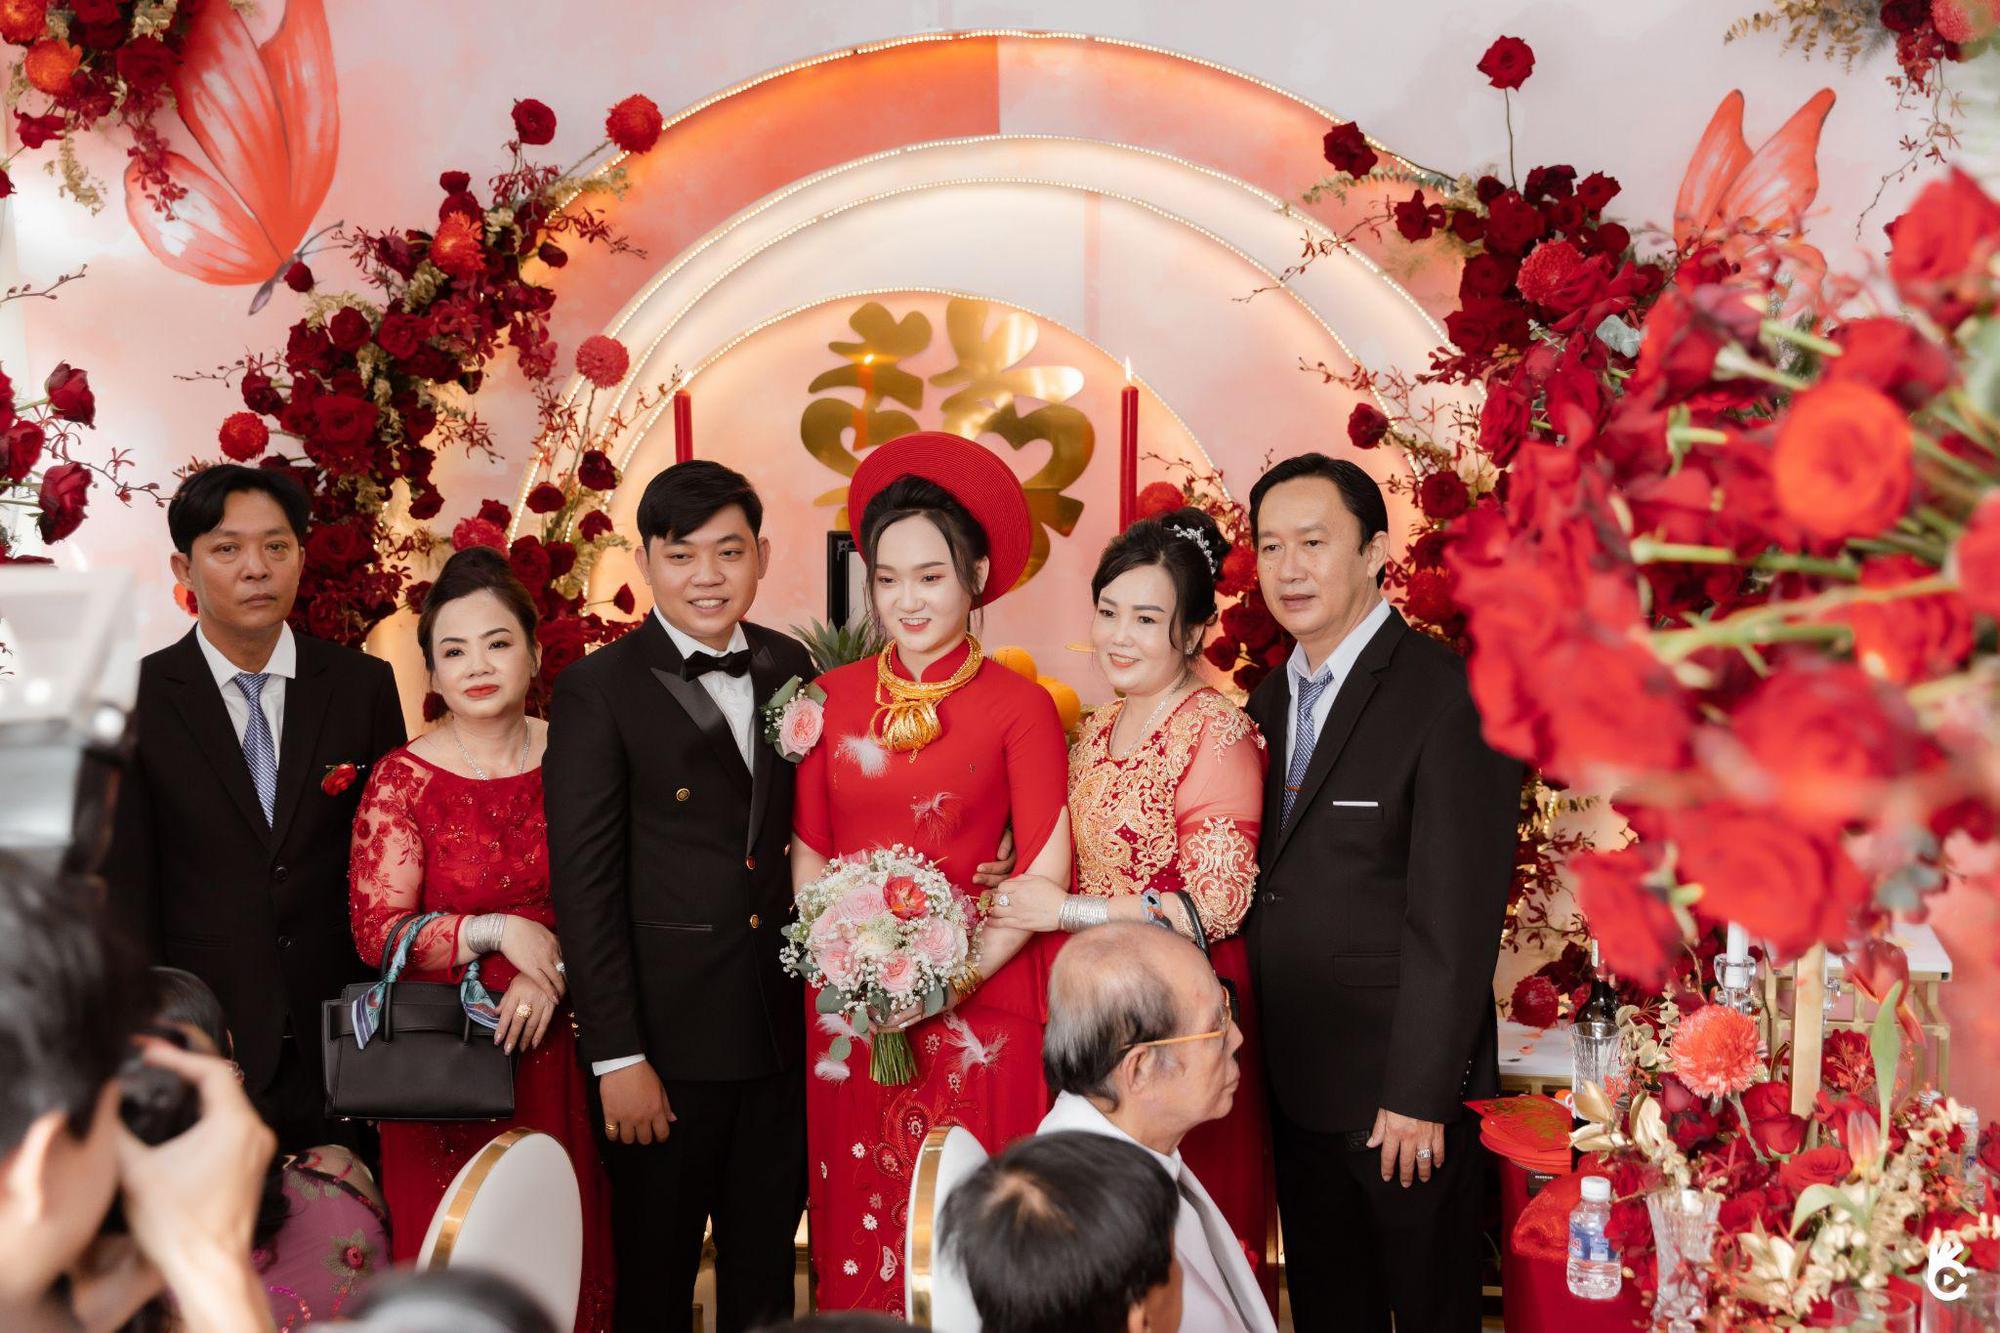 Cận cảnh không gian “siêu đám cưới” trị giá 2 tỷ hoành tráng nhất nhì Đồng Nai - Ảnh 1.